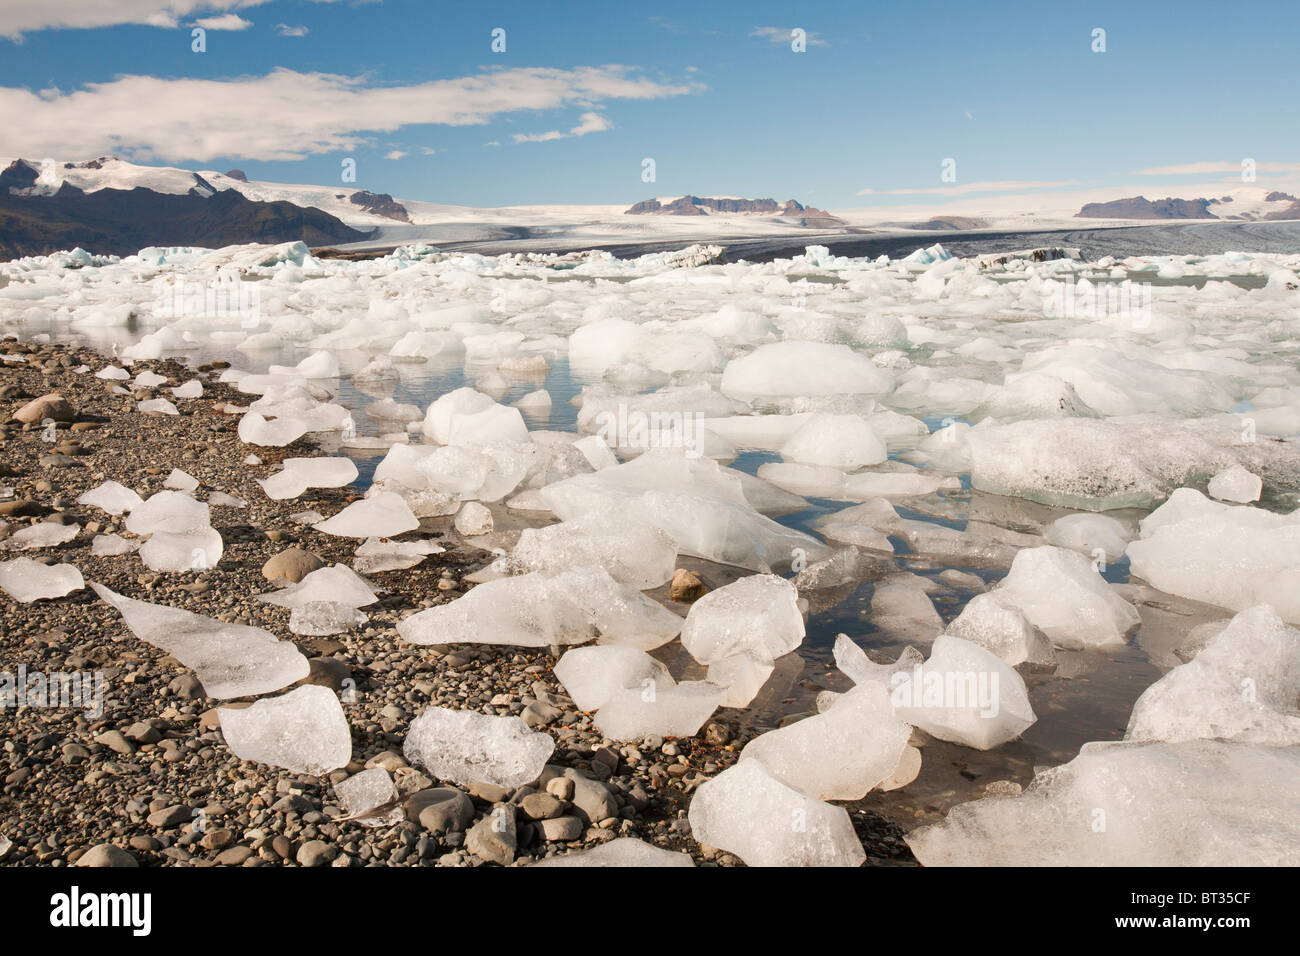 Der Jökulsárlón Eis Lagune, erstellt durch raschen Rückzug des Gletschers Breidamerkurjokull infolge des Klimawandels. Stockfoto